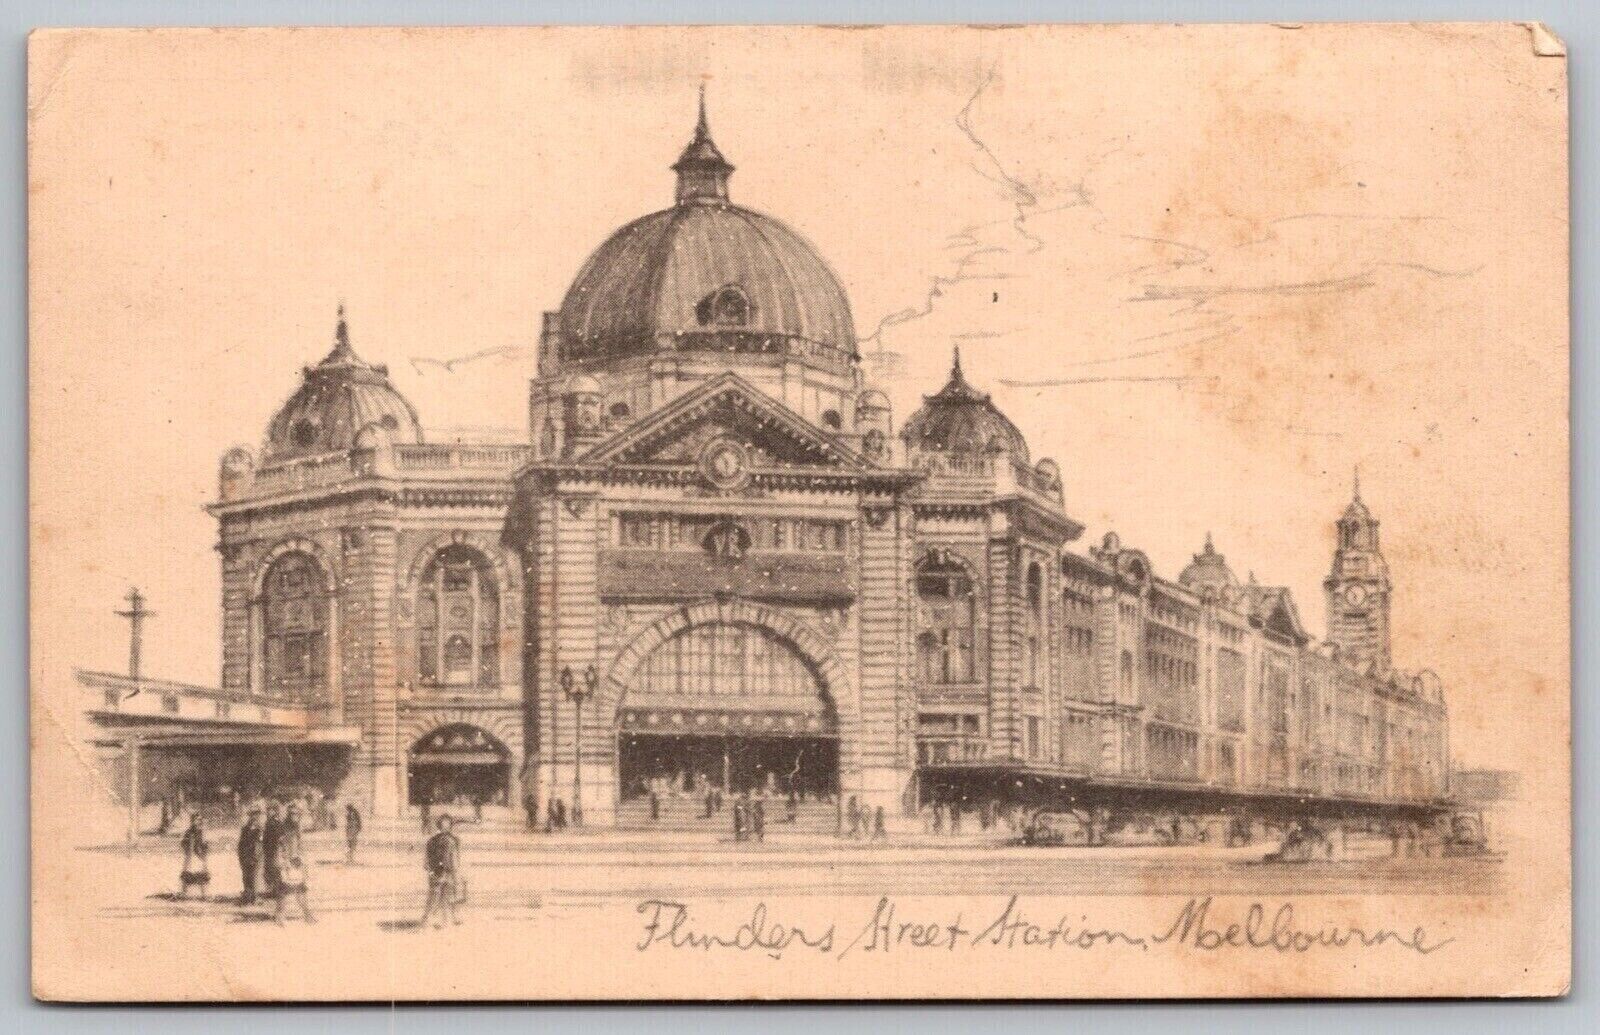 Flinders Street Station Moelbourne Postcard